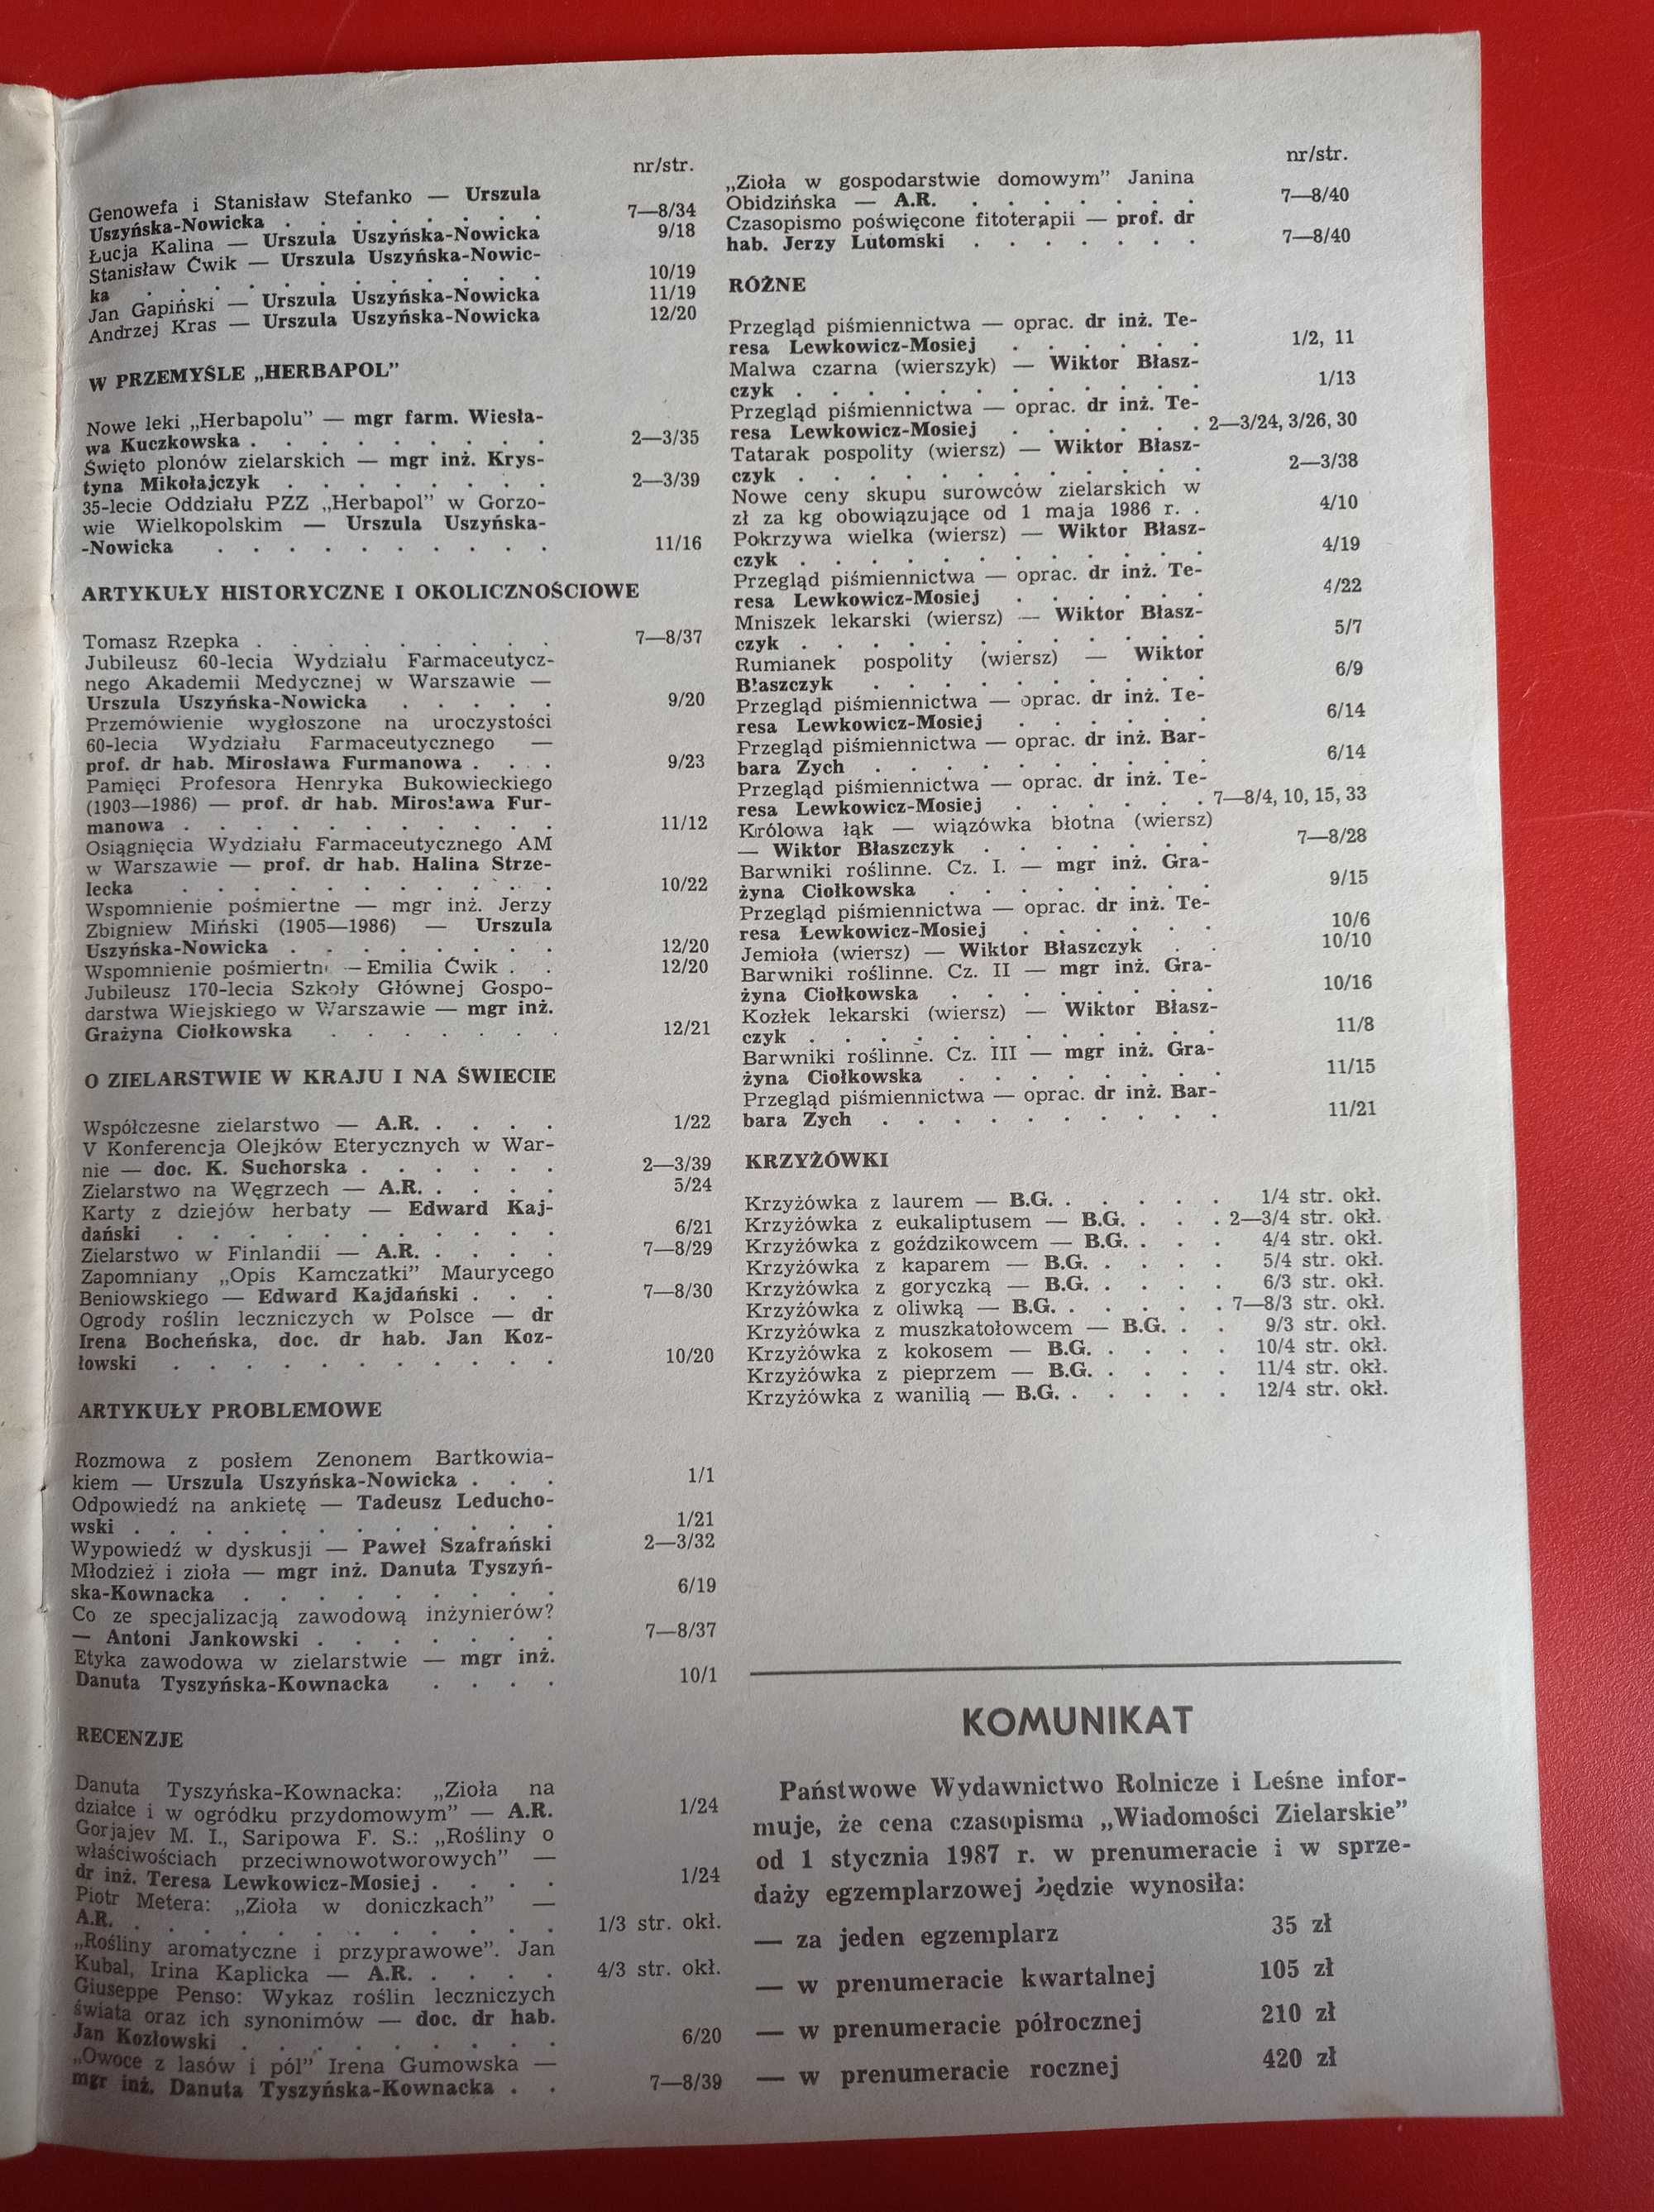 Wiadomości zielarskie nr 9/1986, wrzesień 1986